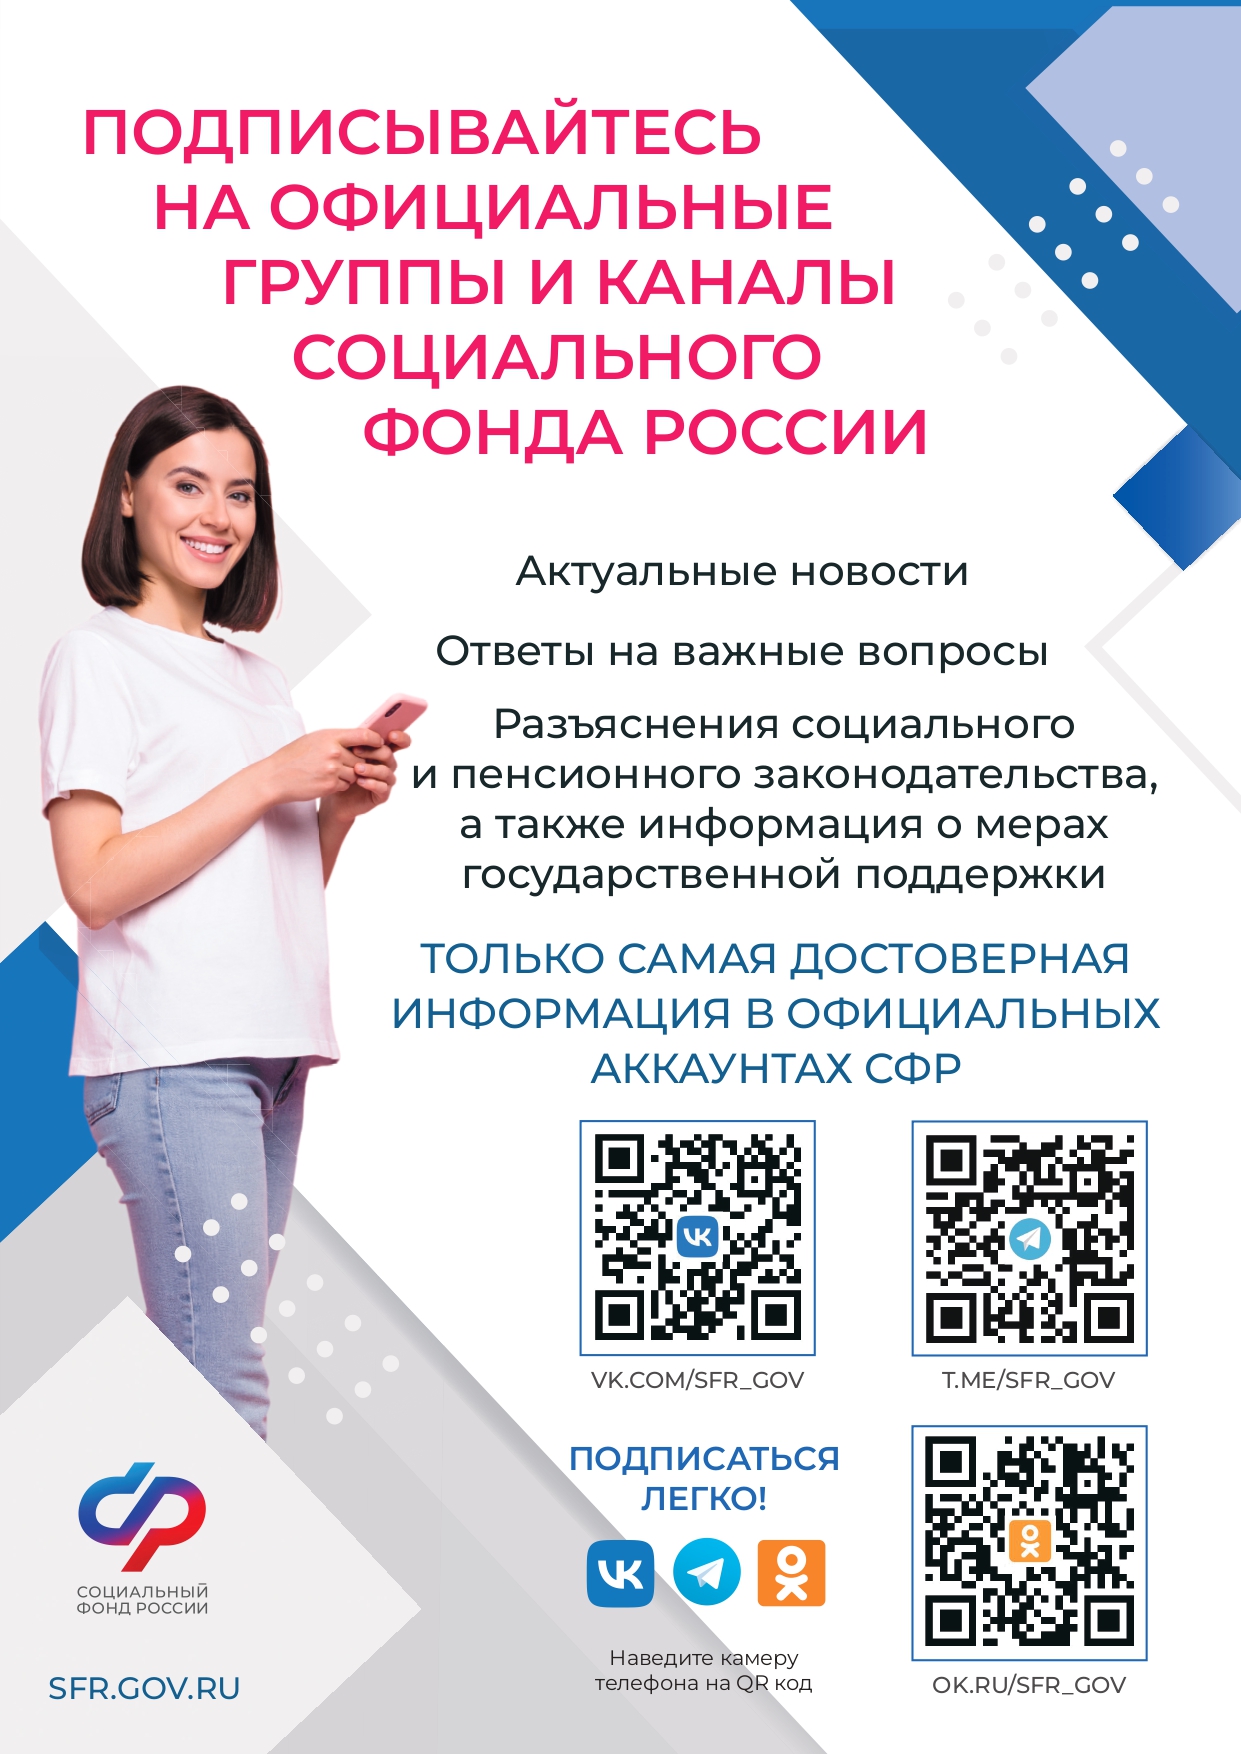 Официальные группы и каналы социального фонда России.